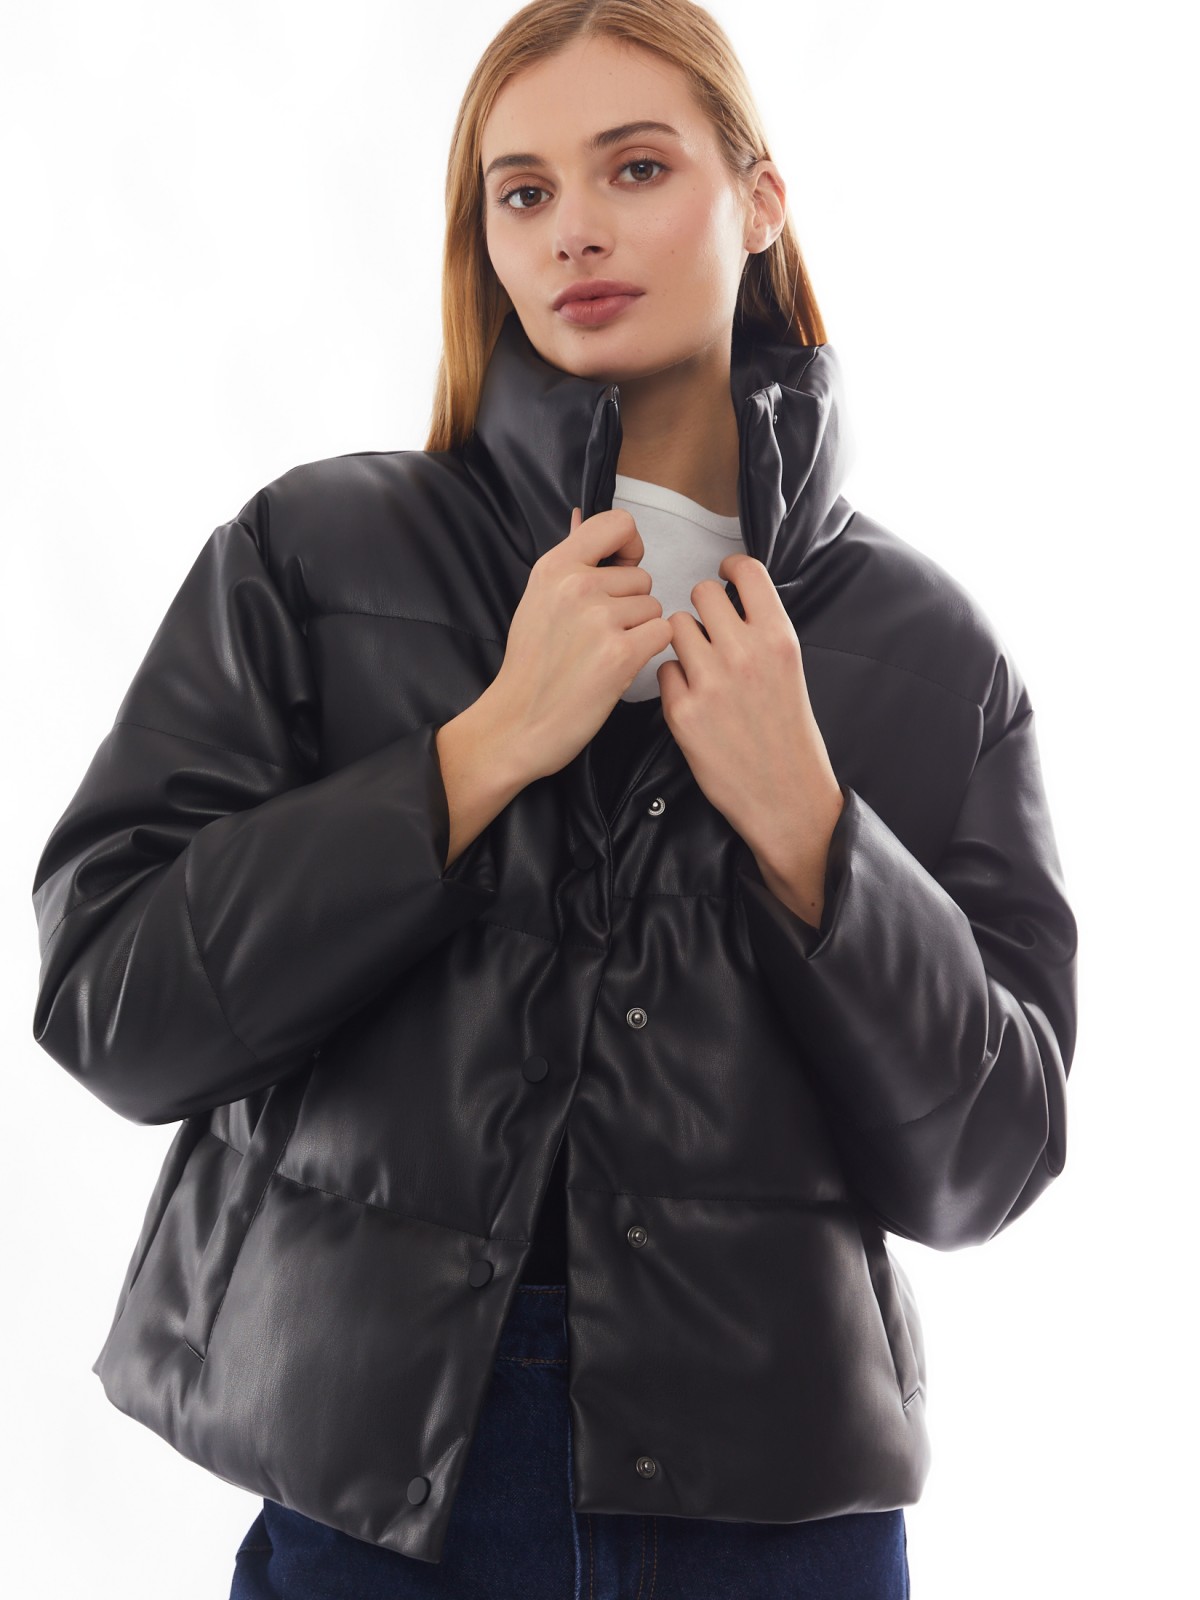 Тёплая стёганая дутая куртка из экокожи с высоким воротником zolla черного цвета